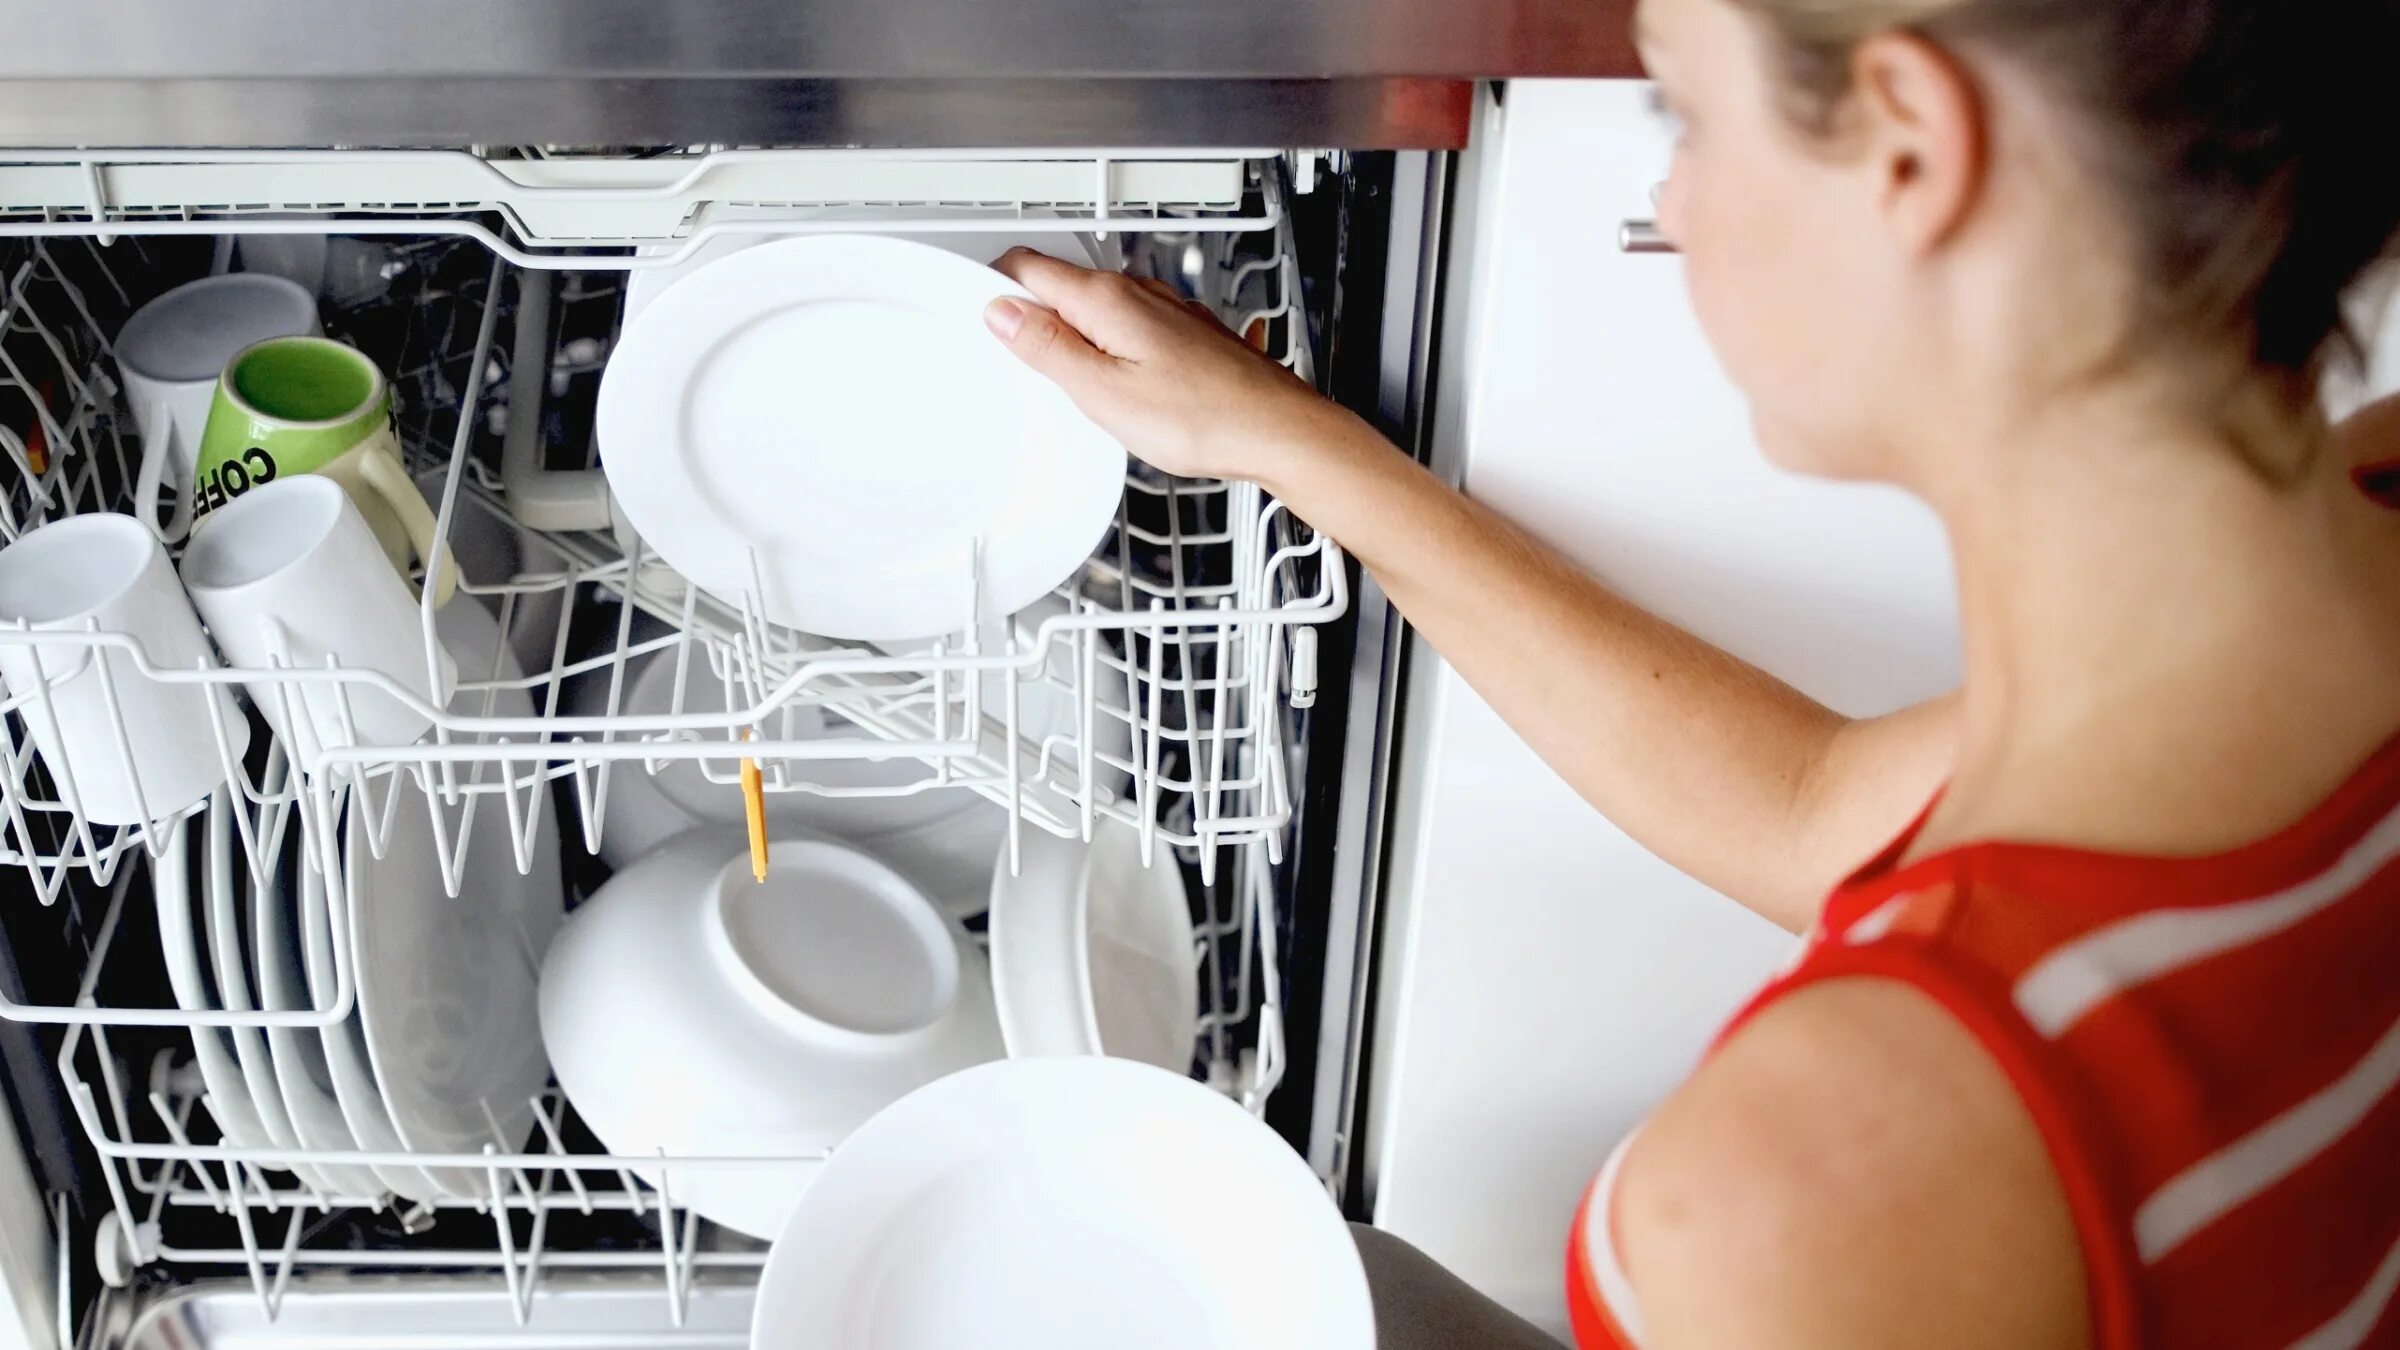 Как отмыть посудомойку. Для посудомоечных машин. Посуда в посудомойке. Мытье в посудомоечной машине. Грязная посуда в посудомоечной машине.